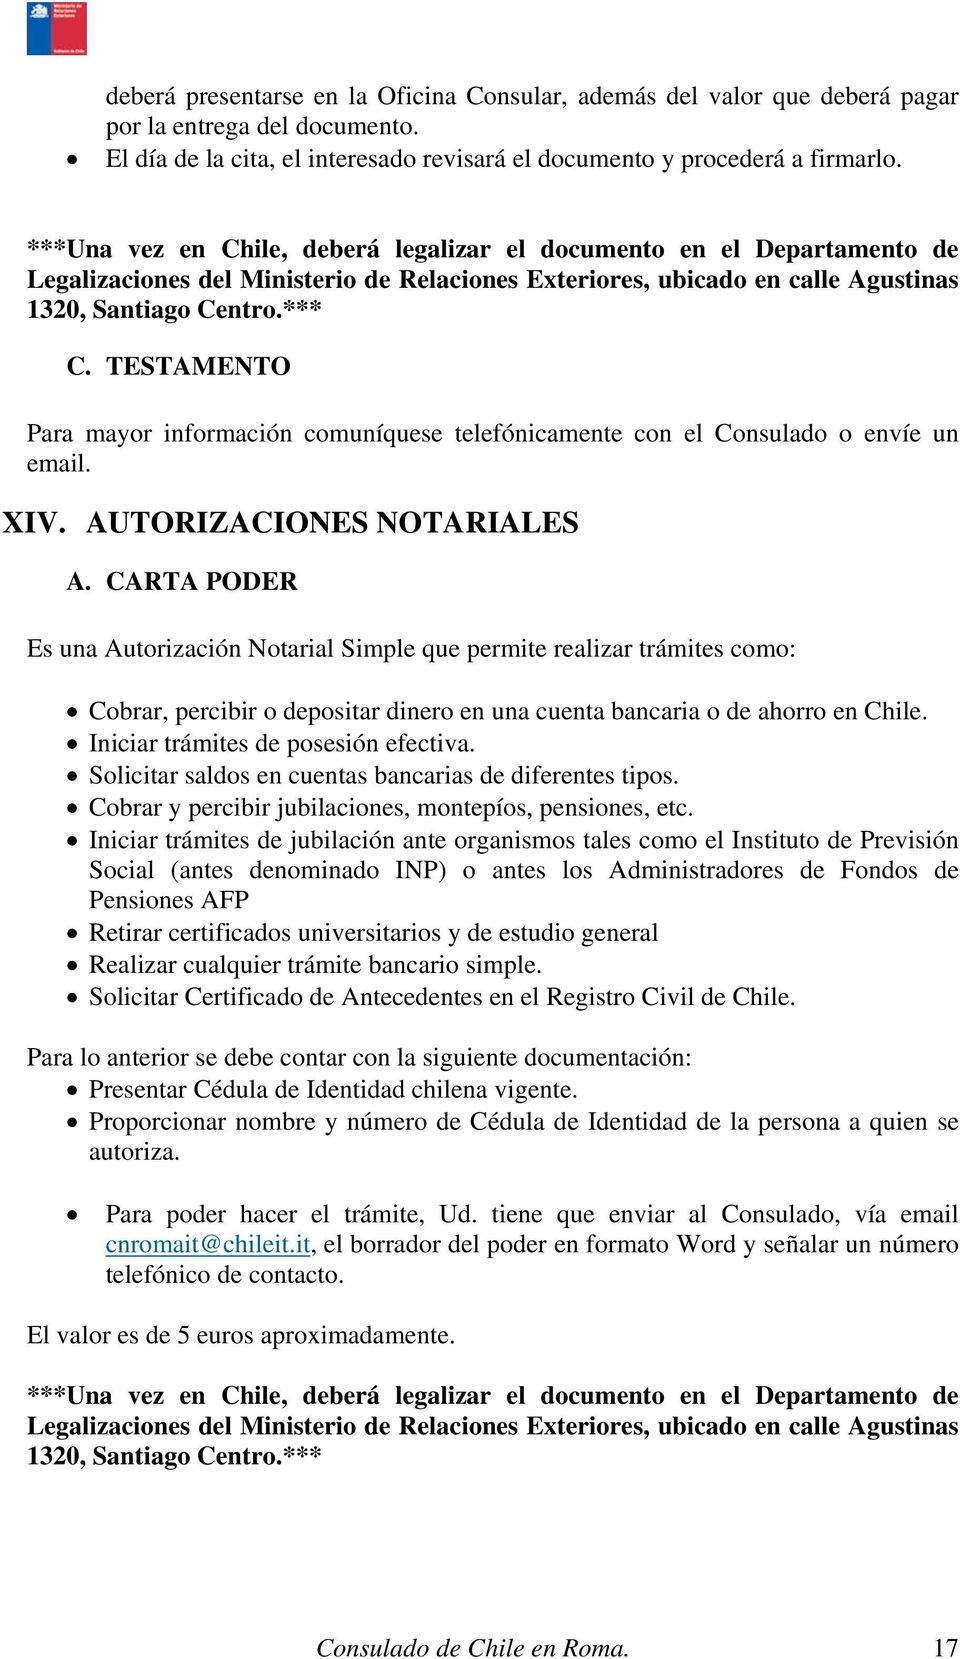 Consulado De Chile En Roma Manual De Servicios Consulares